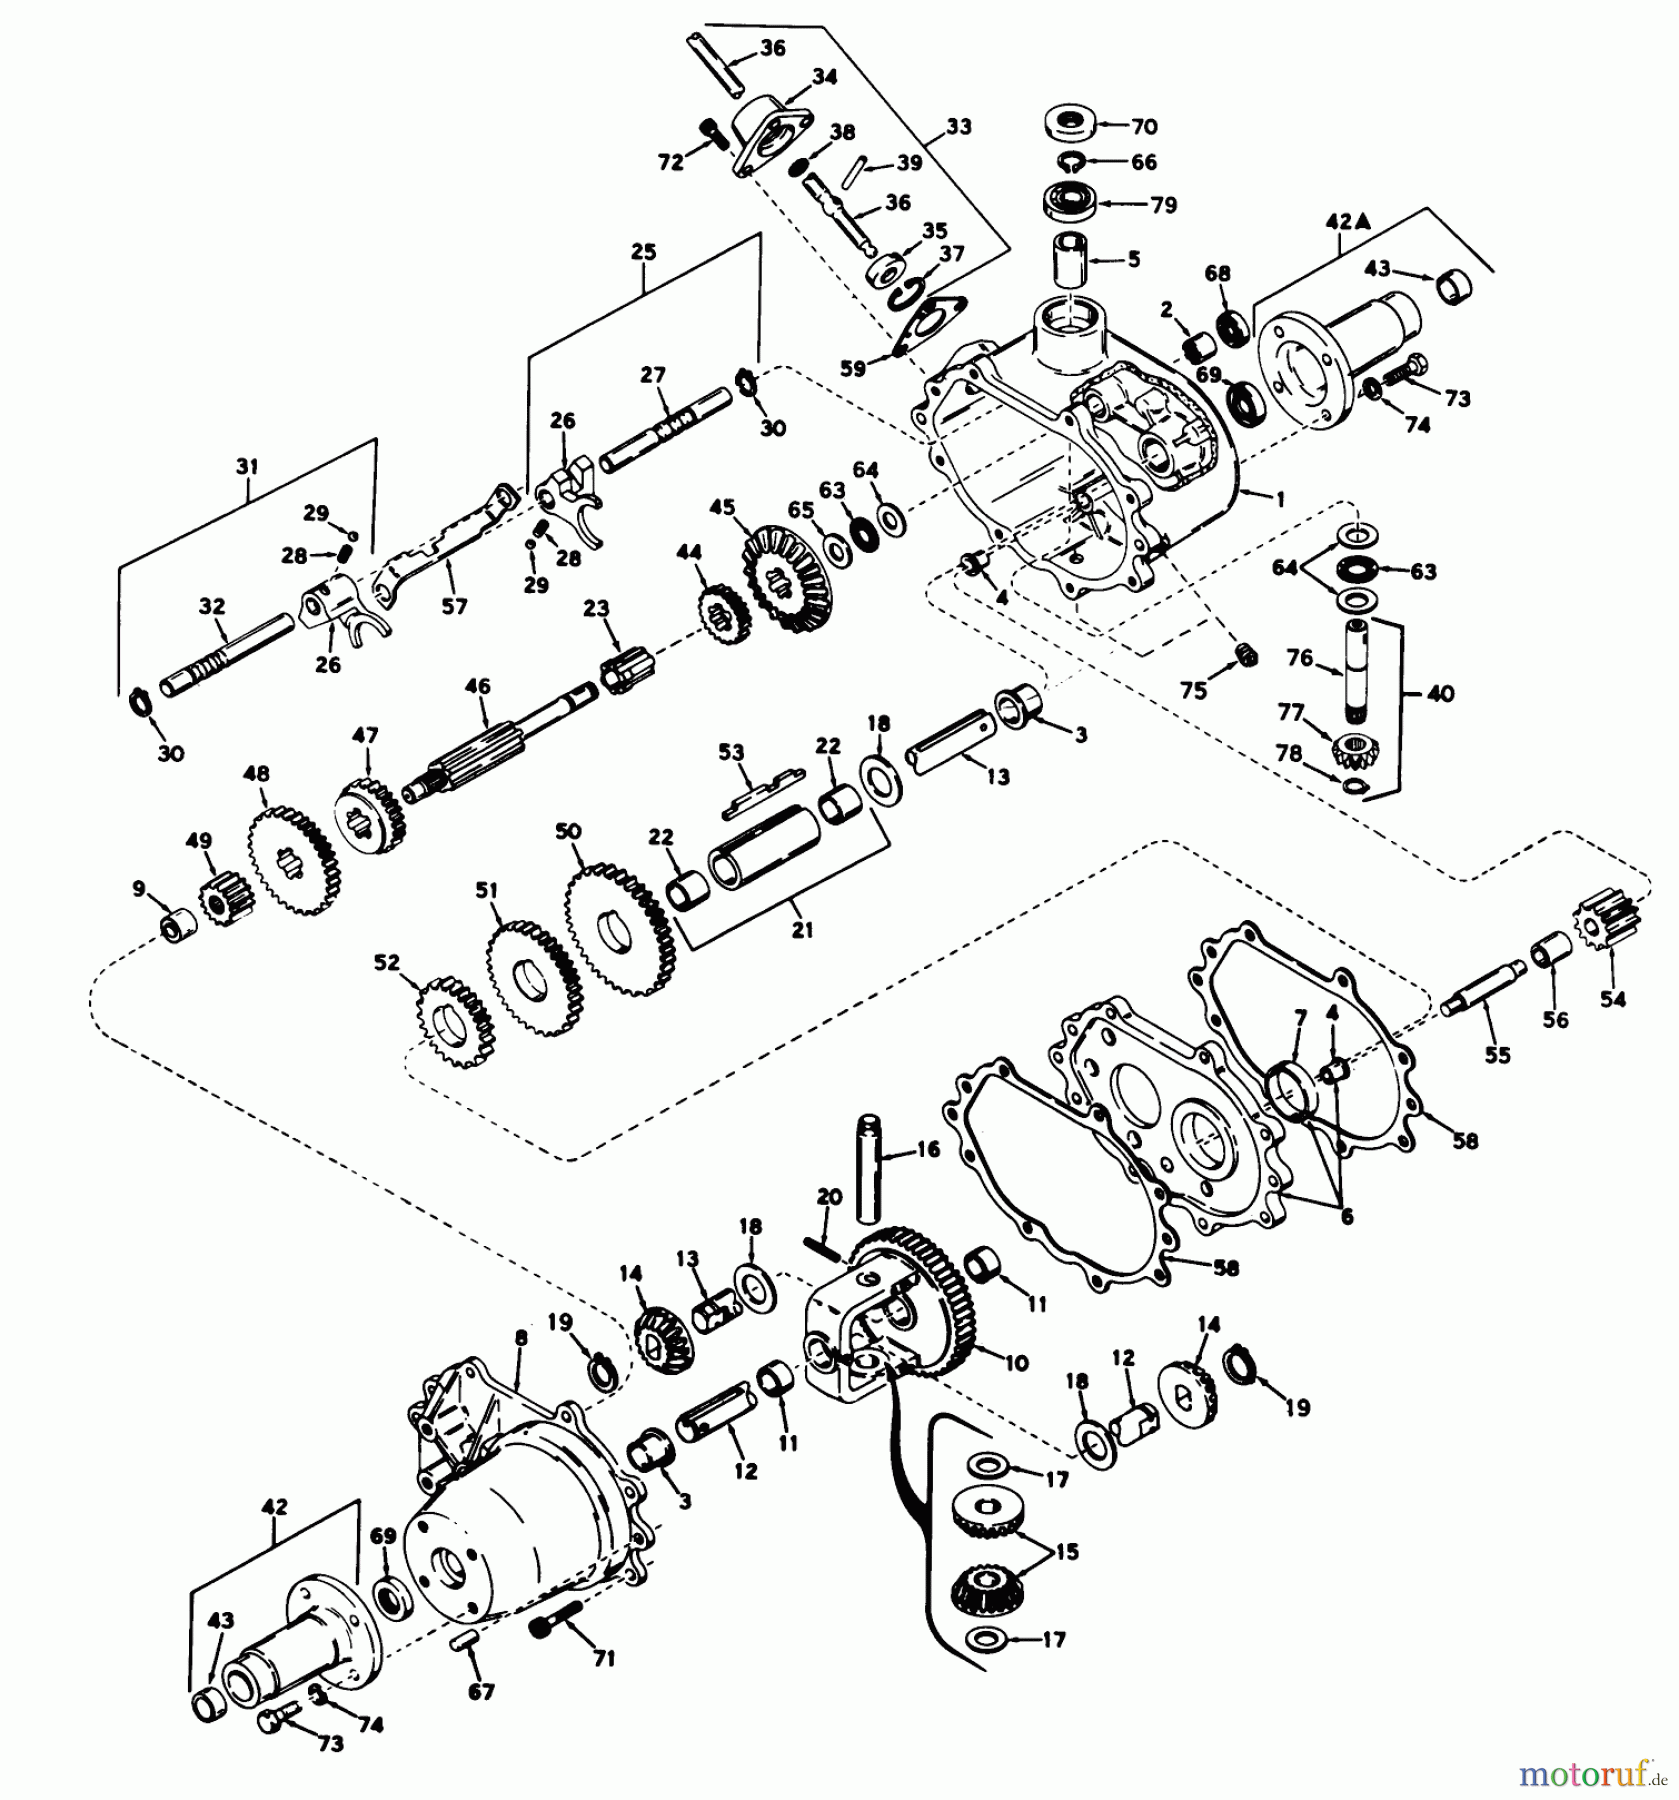  Toro Neu Mowers, Lawn & Garden Tractor Seite 1 55002 (935) - Toro 935 Recoil Lawn Tractor, 1969 (9000001-9999999) TRANSAXLE MODEL NO. 615 PARTS LIST